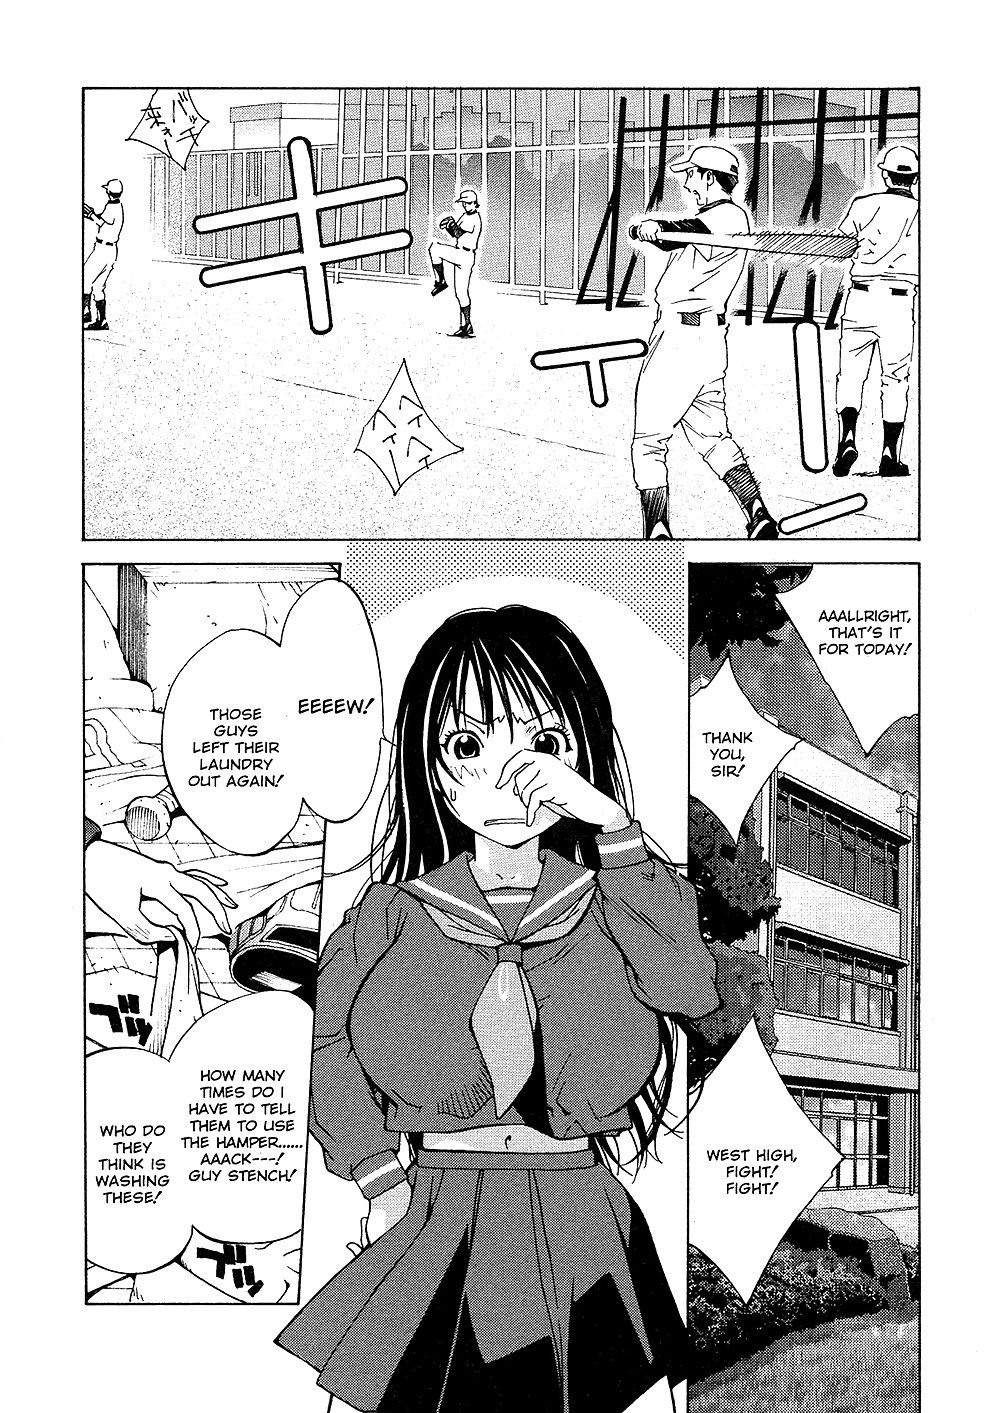 (comic hentai) yumisuke kotoyoshi erotic works #2
 #21623809